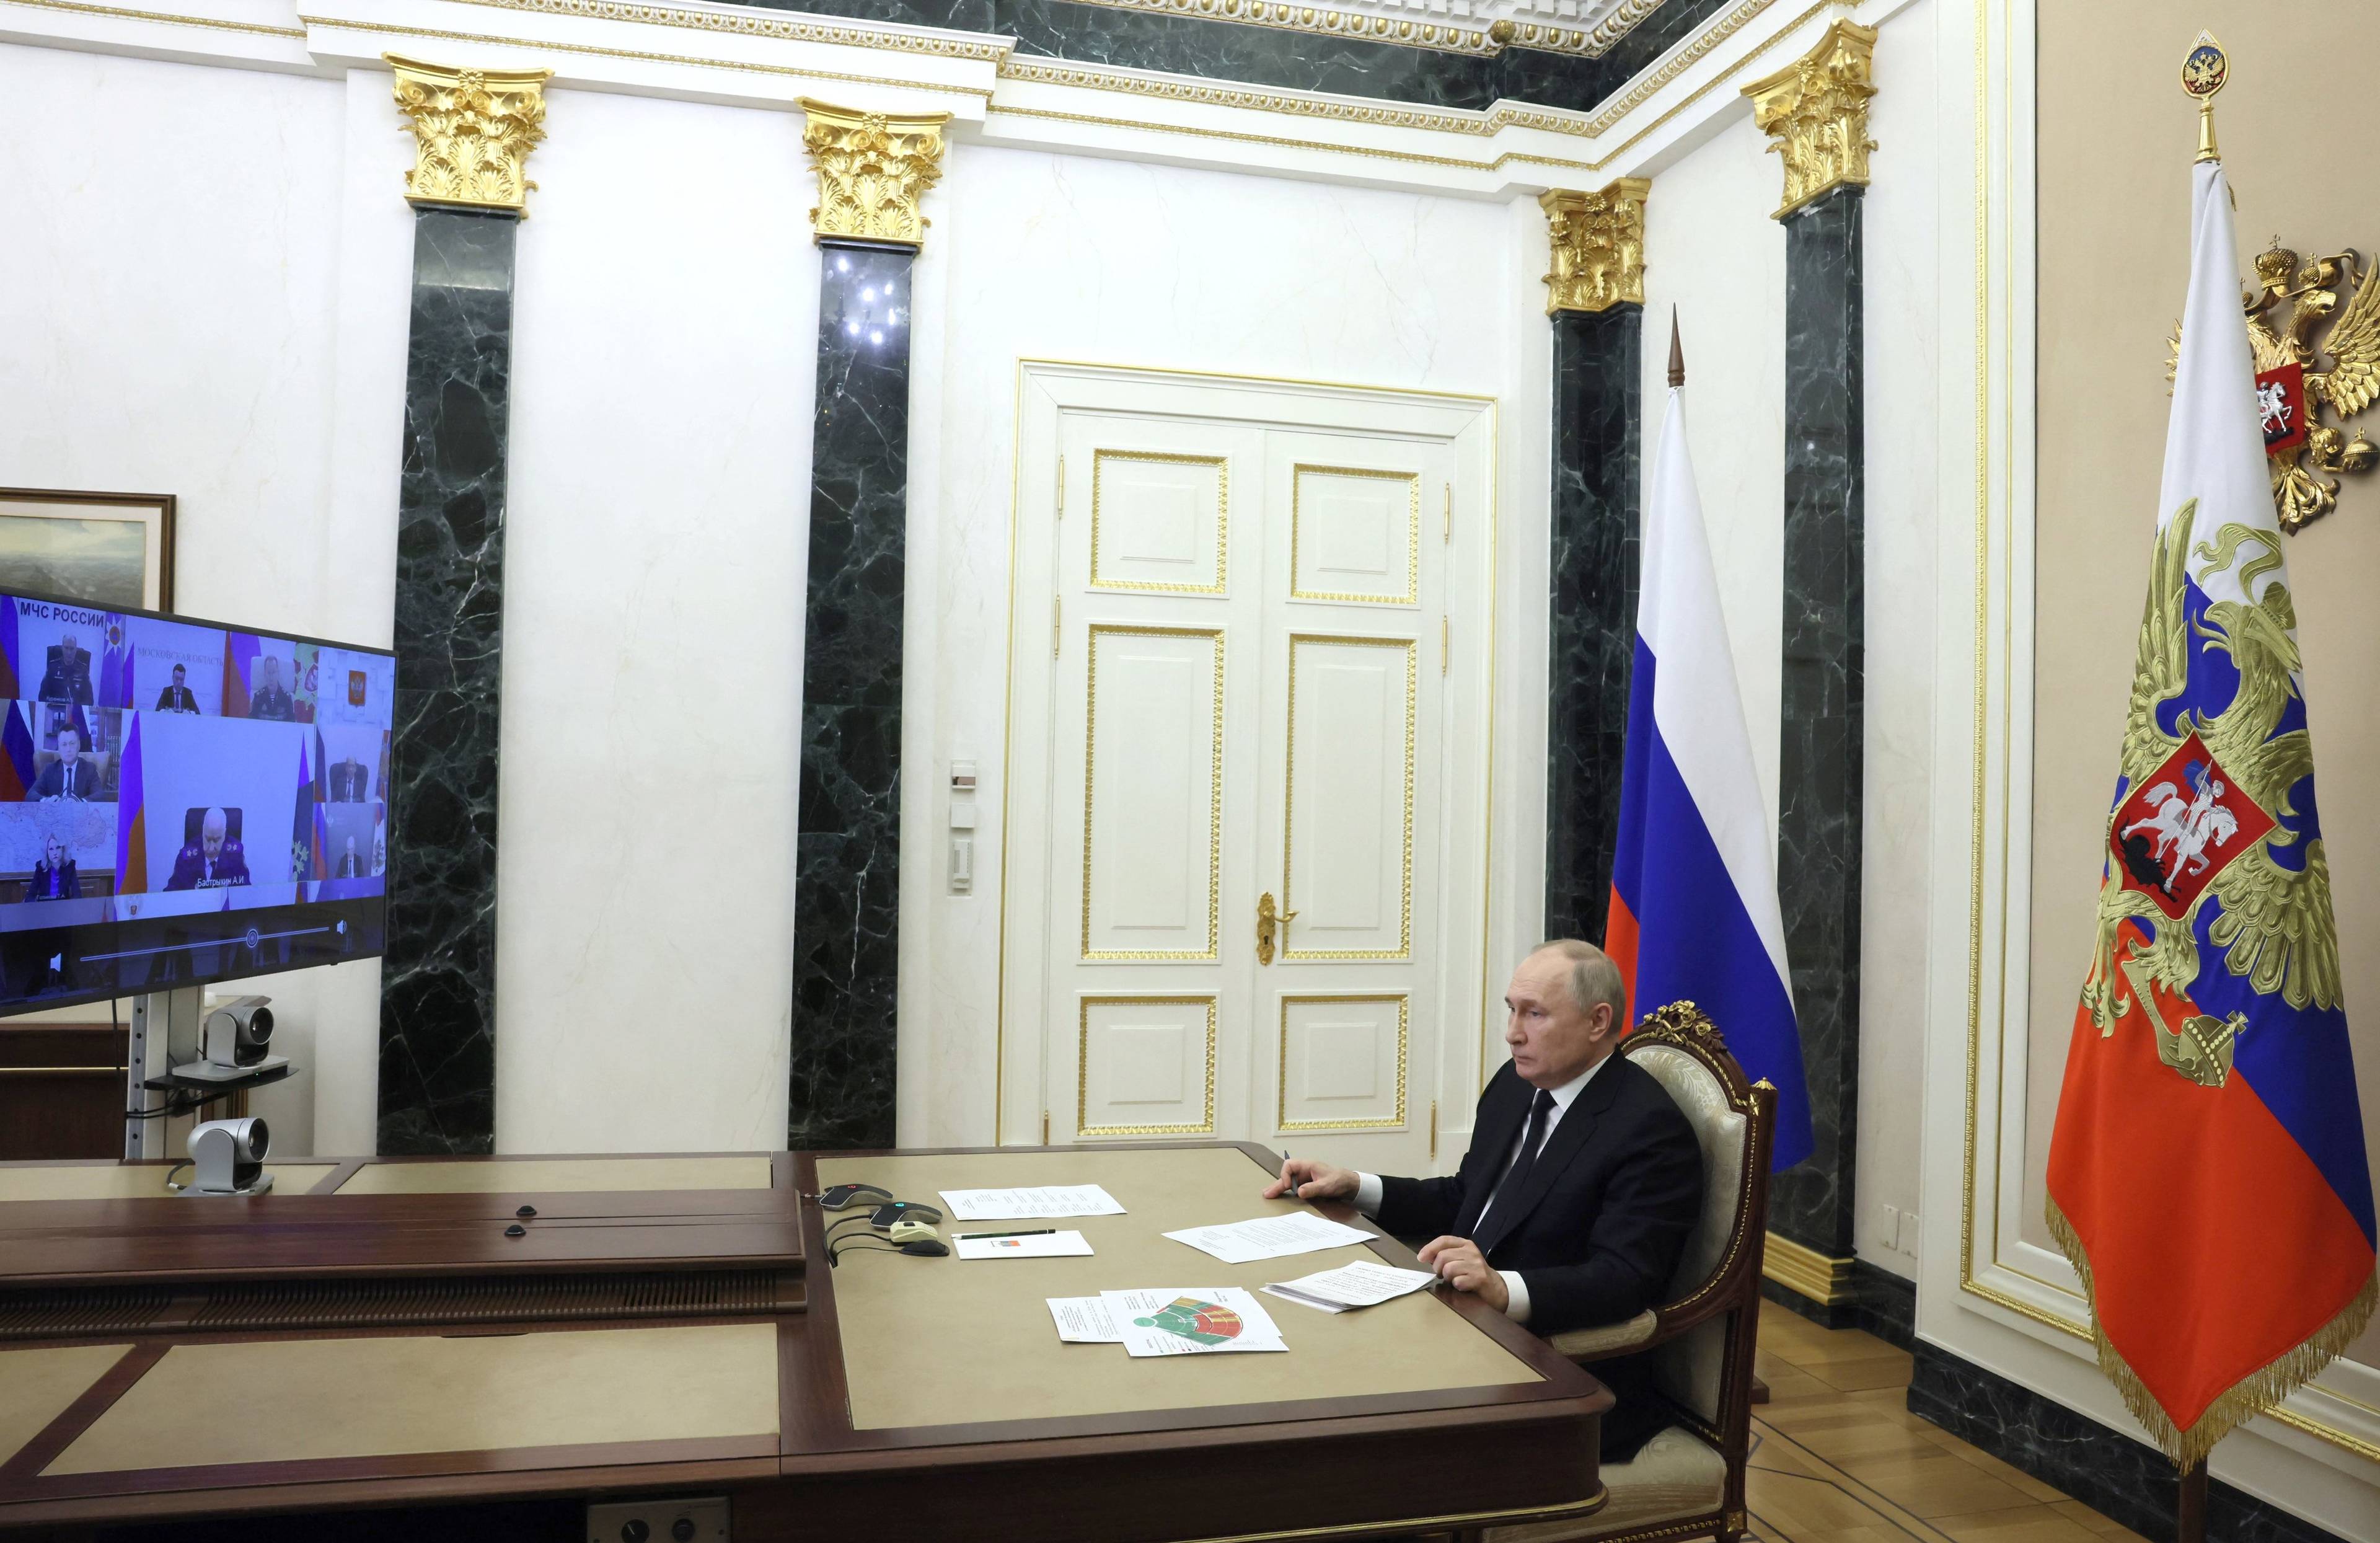 Władimir Putin siedzi na końcu stołu i bierze udział w zdalnym posiedzeniu Rady Bezpieczeństwa